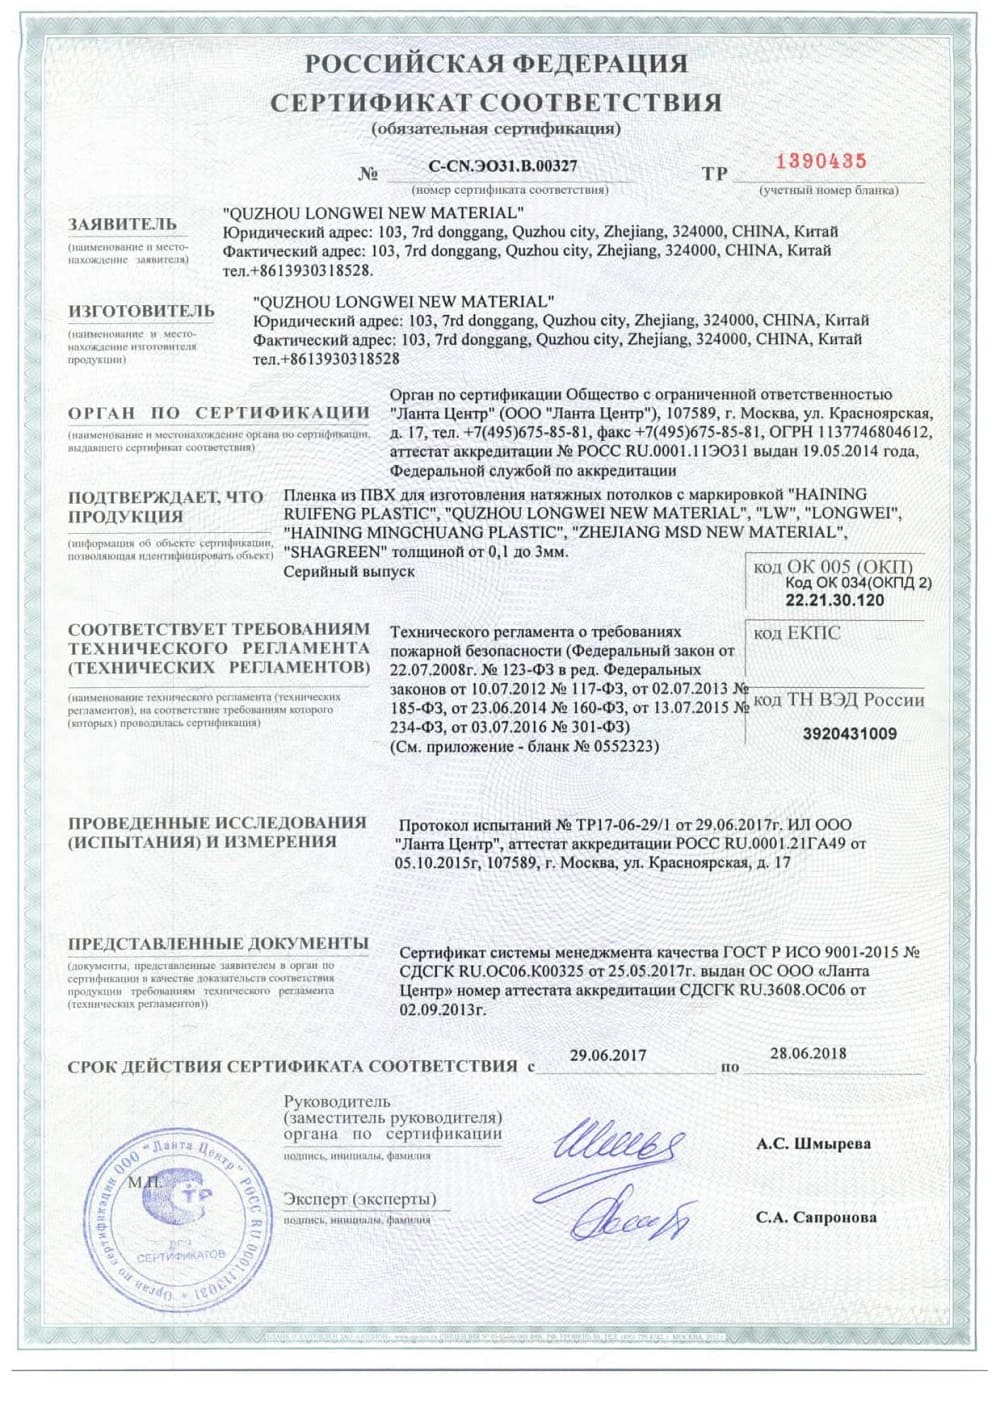 Сертификат соответствия на чёрные натяжные полотна Alezi